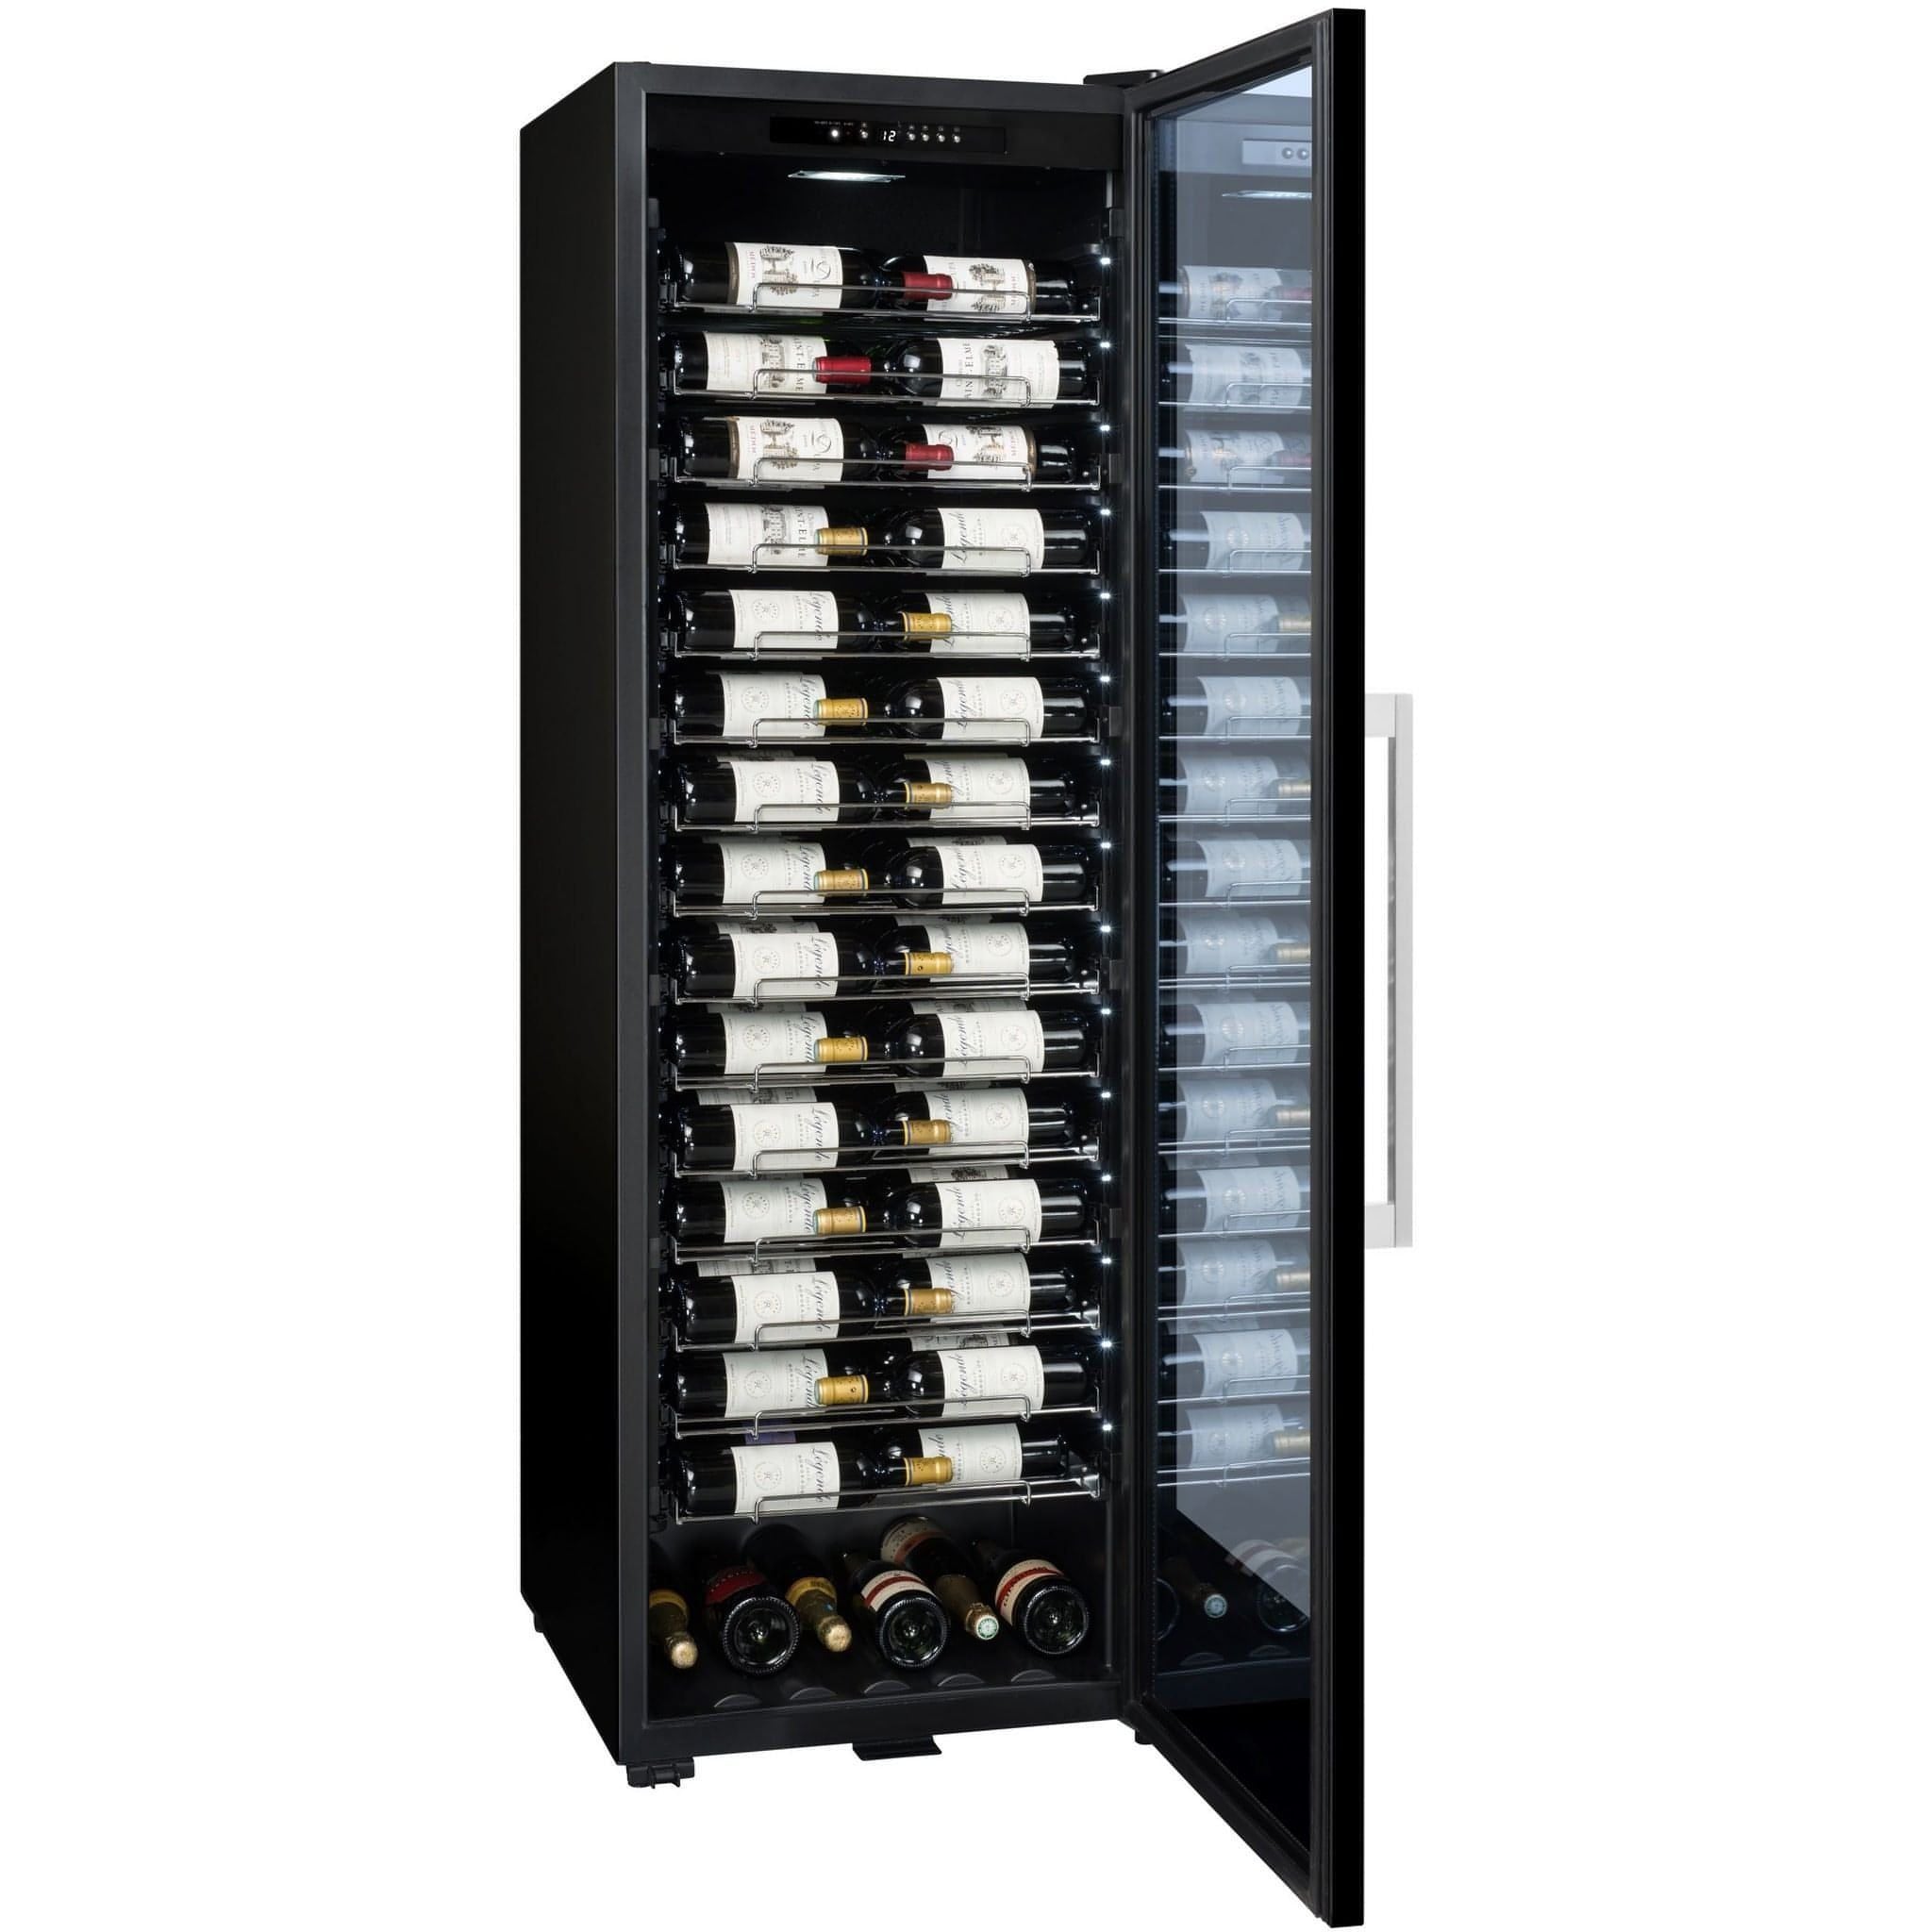 La Sommeliere - 152 Bottle Freestanding Single Zone Wine Cabinet PRO160